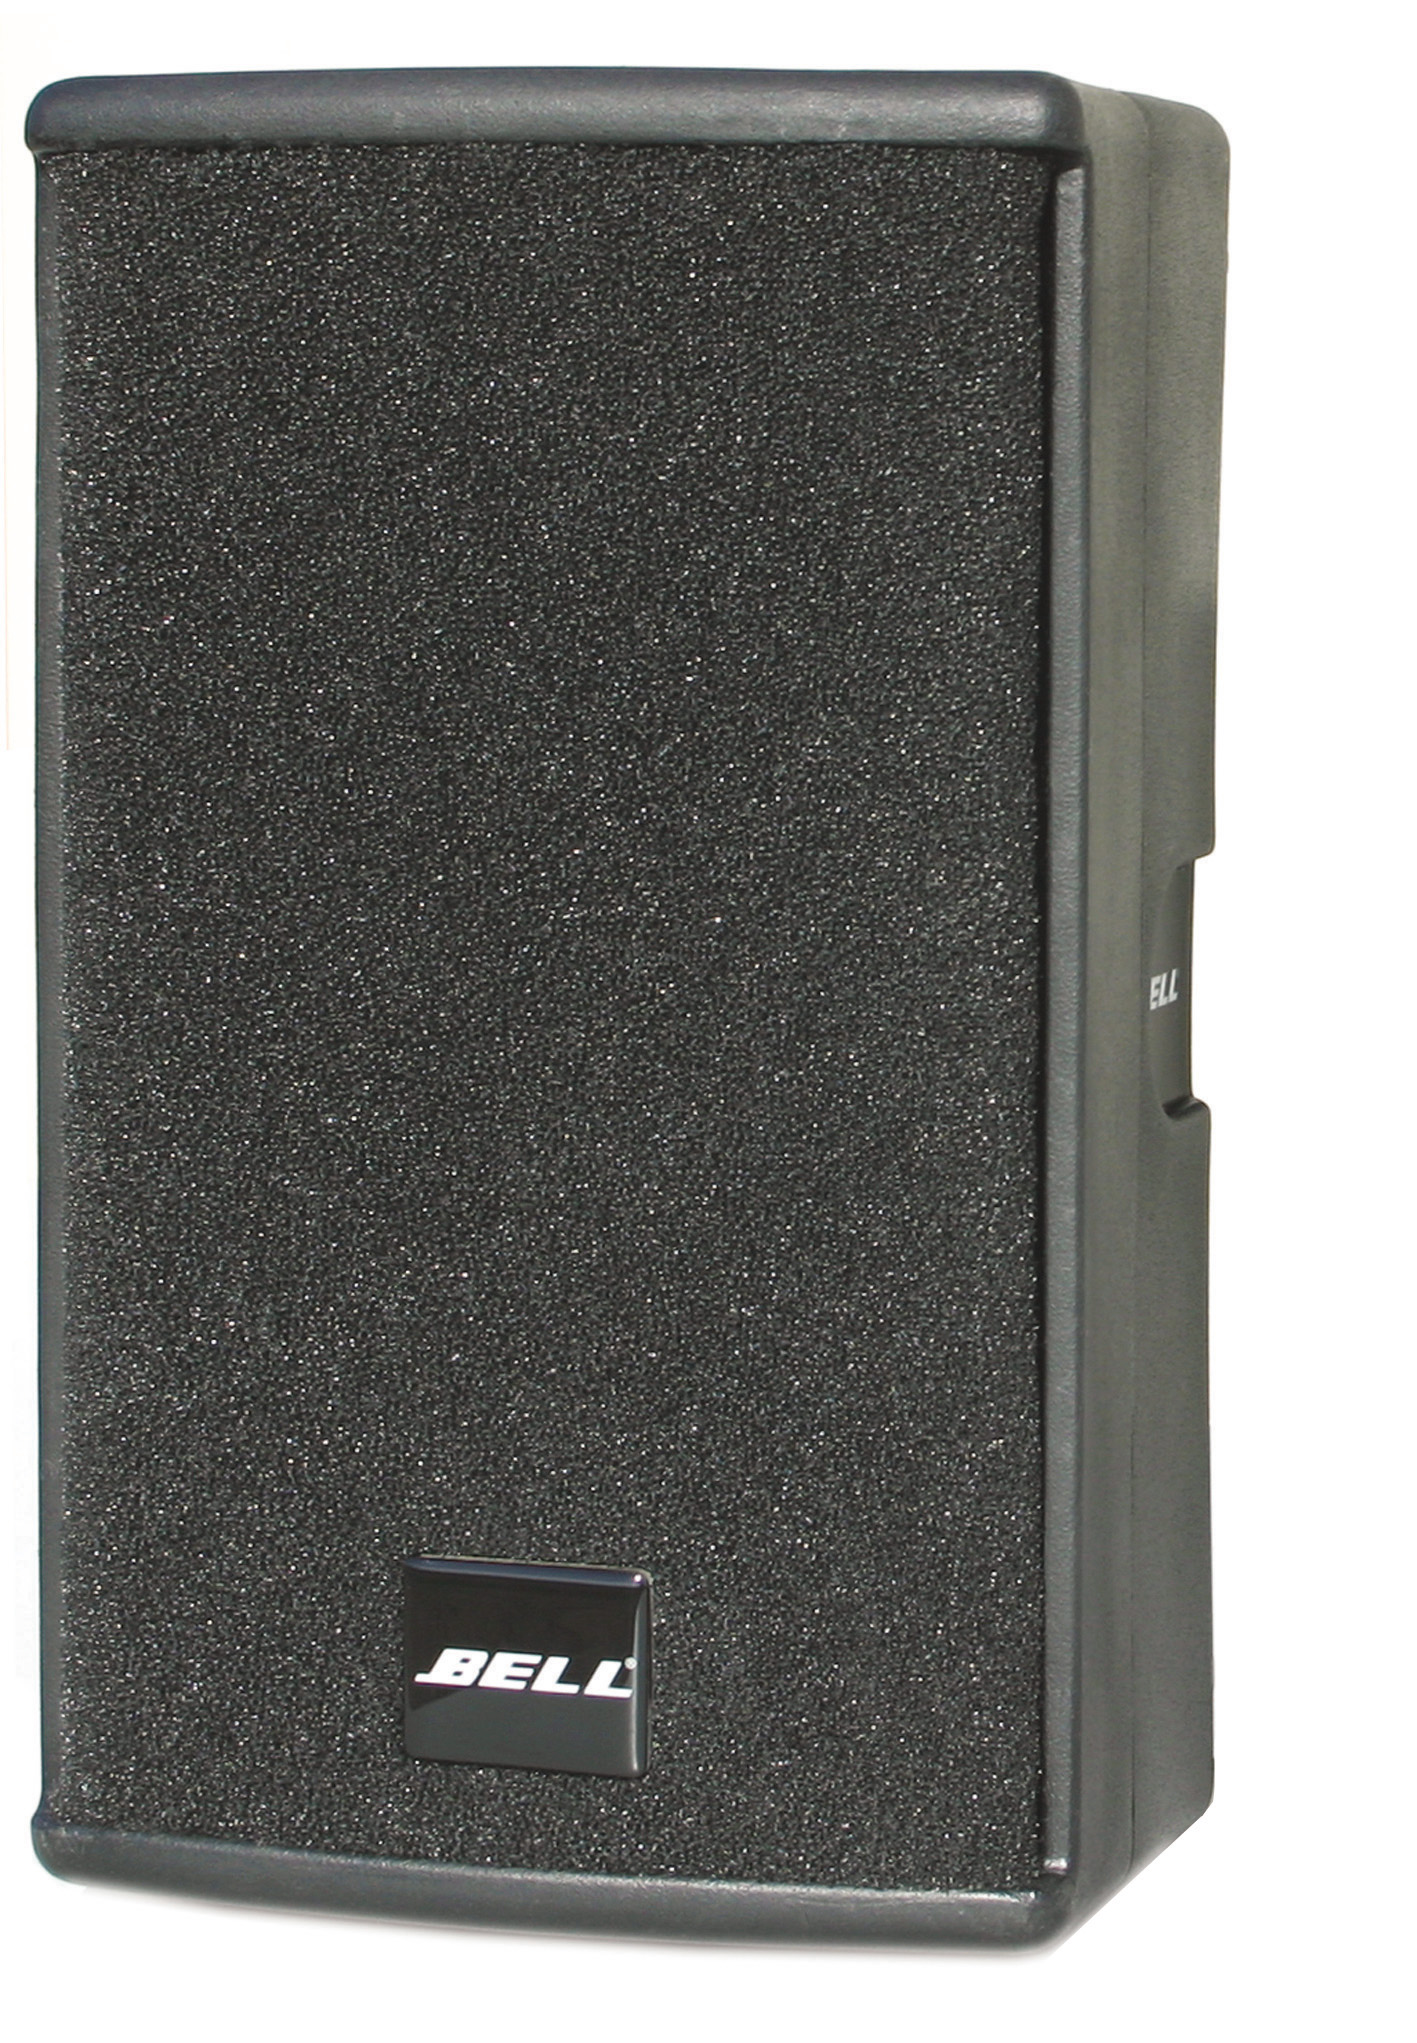 德國贝尔BELL M15專業音響15寸音箱全頻音箱舞台音響酒店音響會議音響娛樂音響酒吧音響高端音箱产品图片